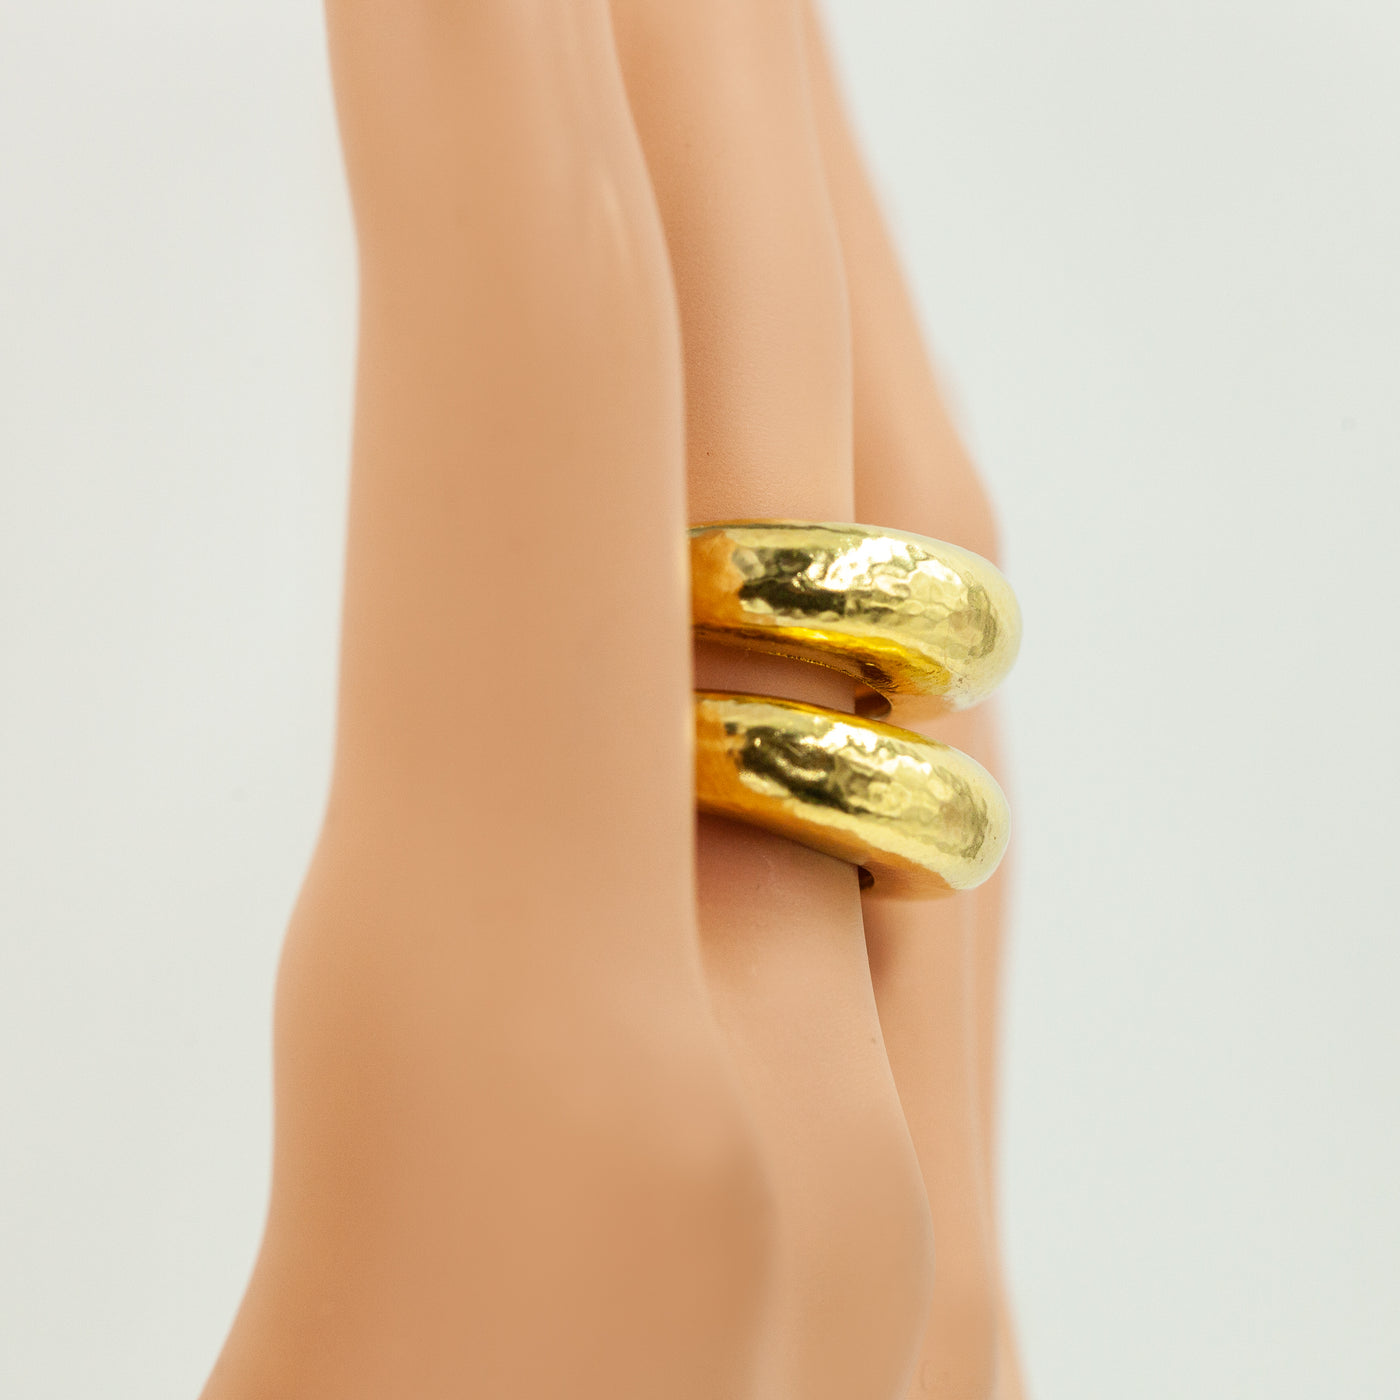 Van Cleef & Arpels 18K Rose Gold Perlee Ring-NYShowplace